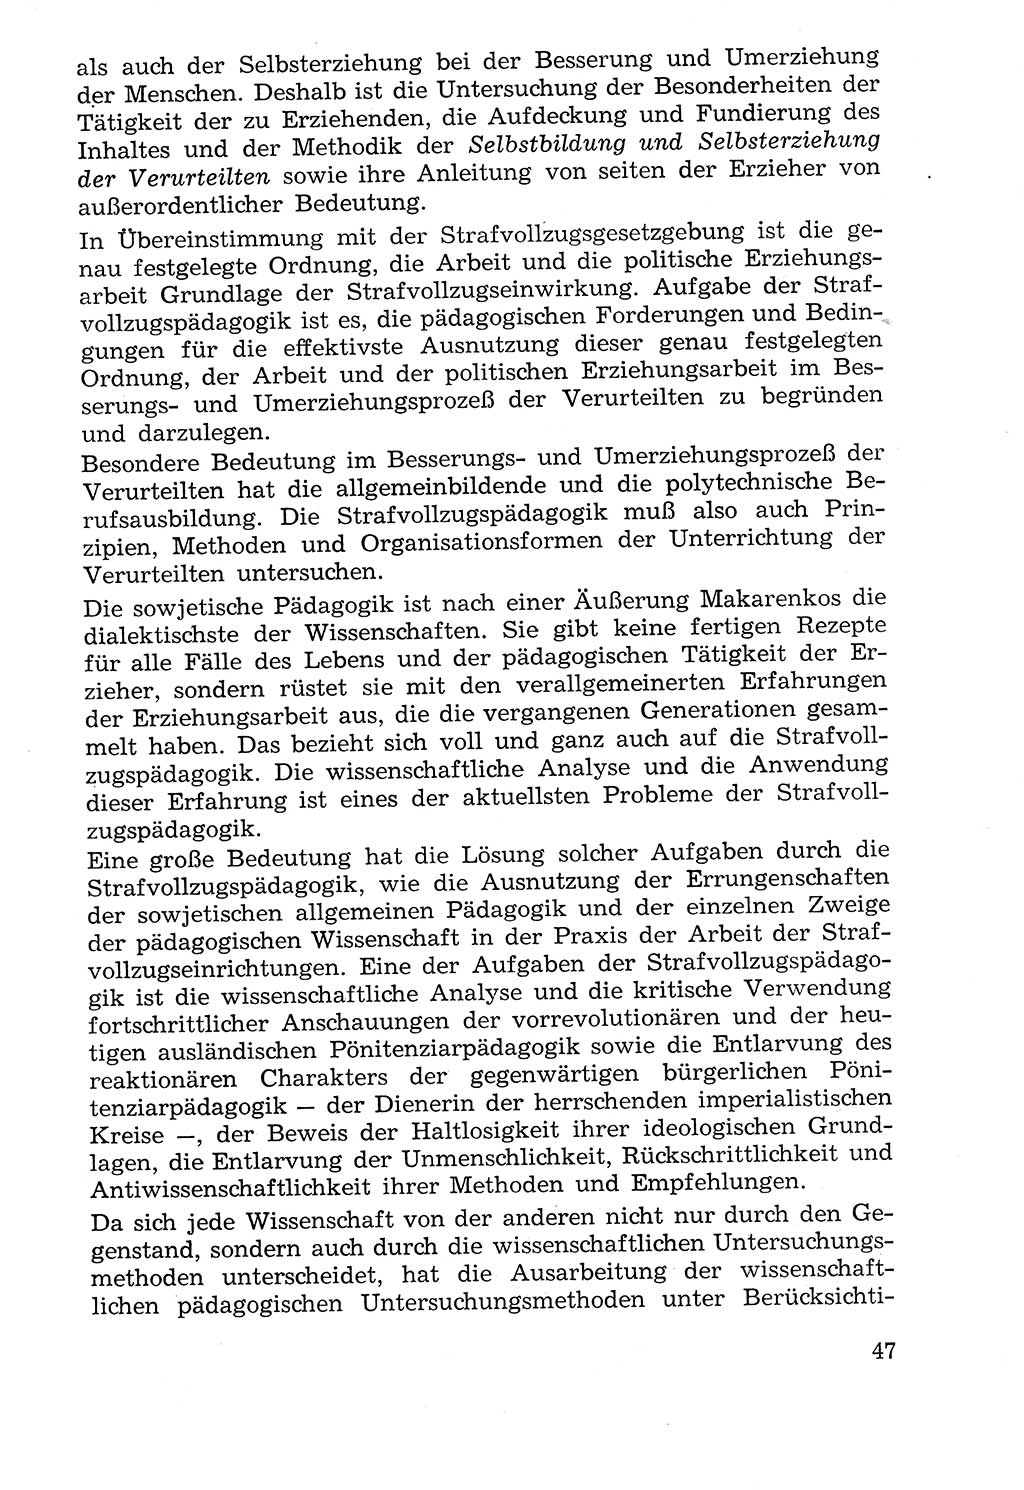 Lehrbuch der Strafvollzugspädagogik [Deutsche Demokratische Republik (DDR)] 1969, Seite 47 (Lb. SV-Pd. DDR 1969, S. 47)